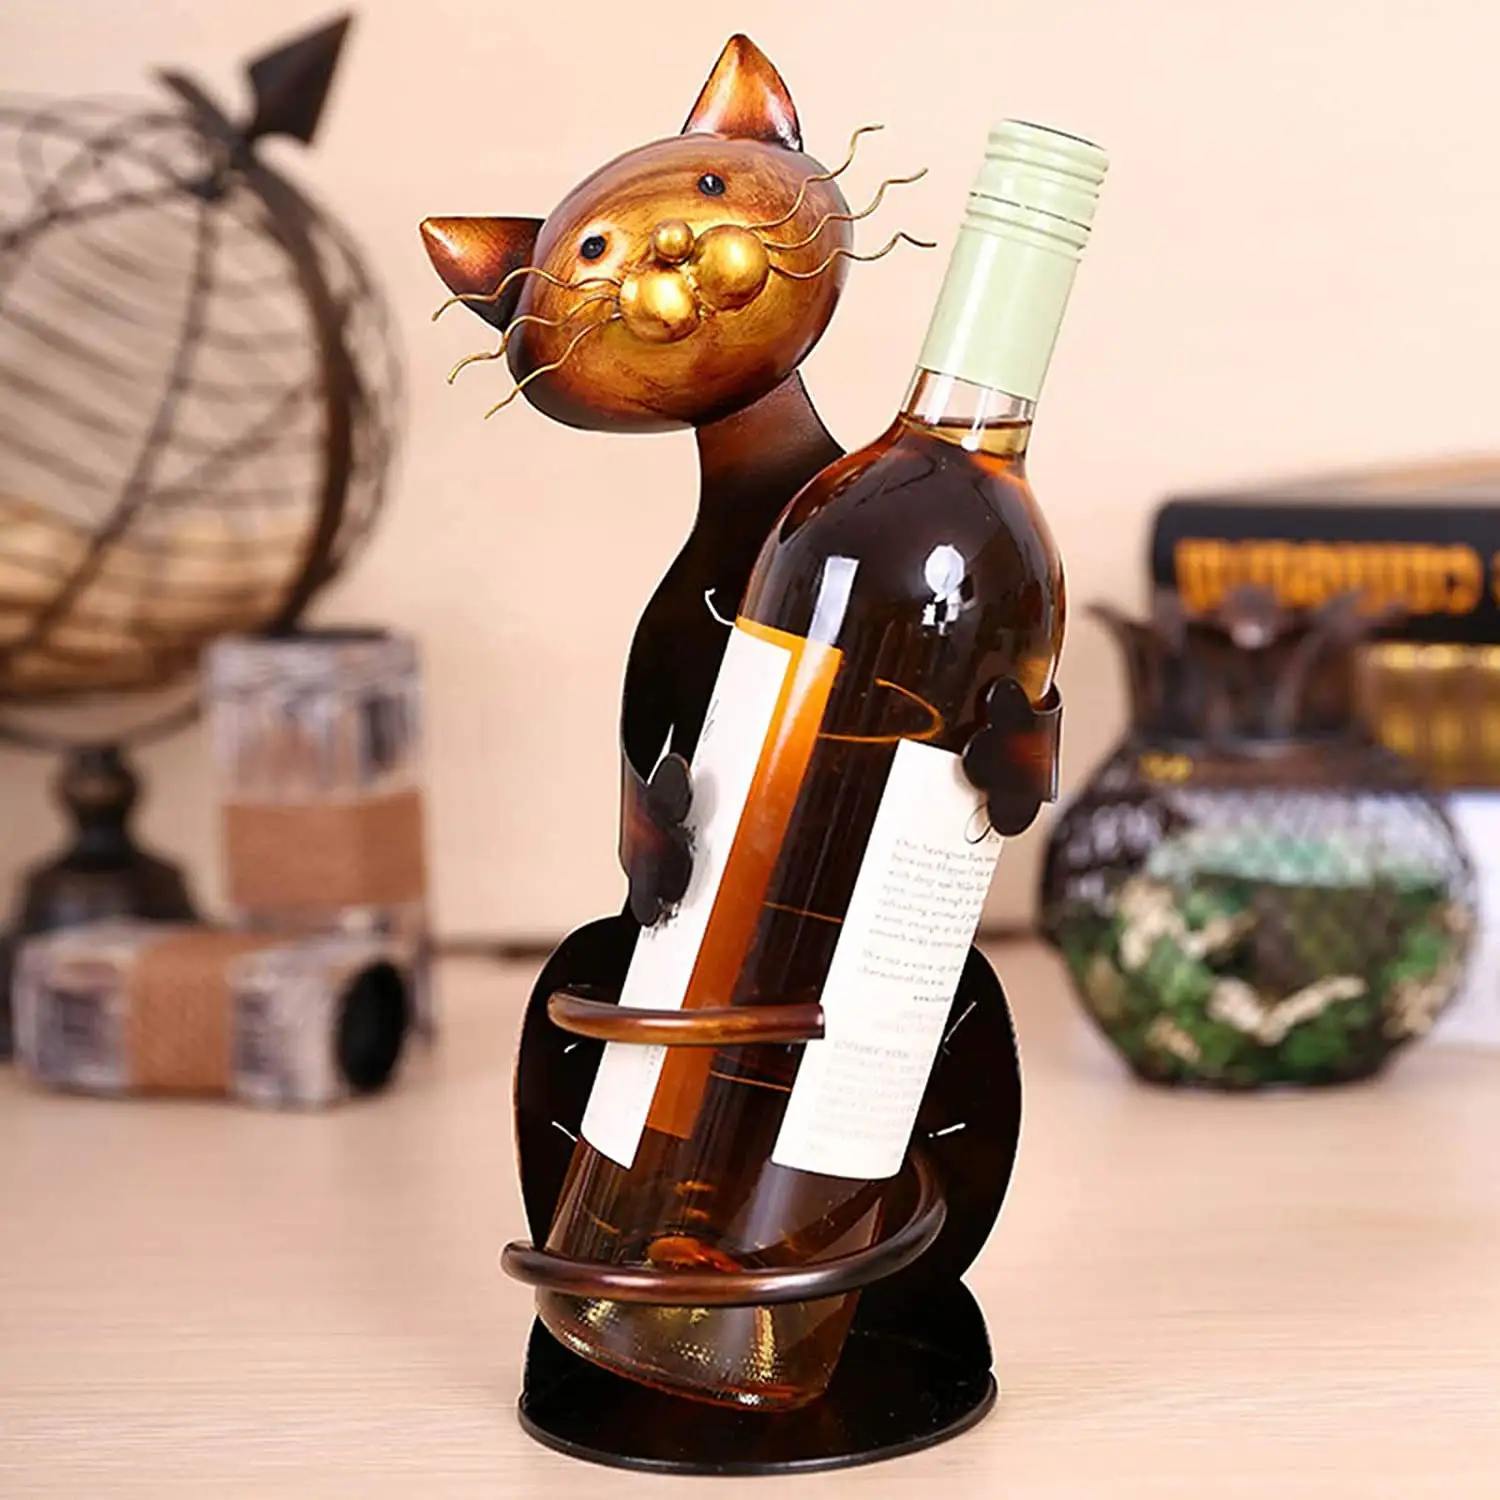 ที่ใส่ขวดไวน์รูปแมวรูปปั้นโลหะสำหรับตกแต่งบ้านงานฝีมือที่วางขวดไวน์รูปแมว